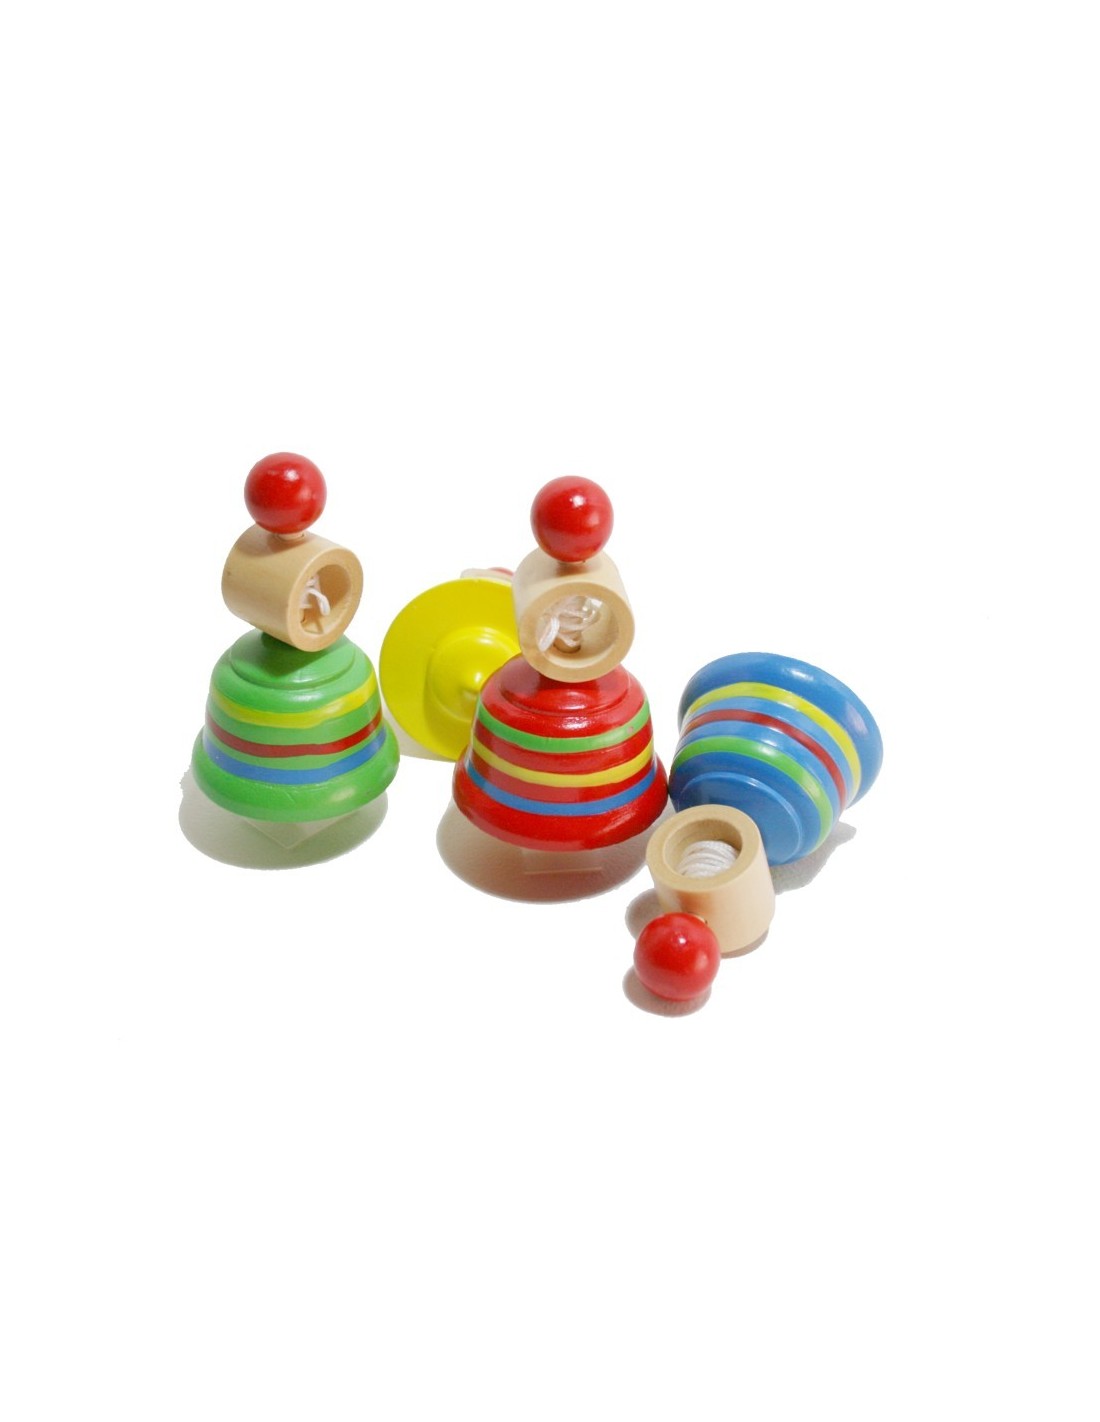 Peonza de madera de colores para los más pequeños peonza juego tradicional y clásico para niño y niña